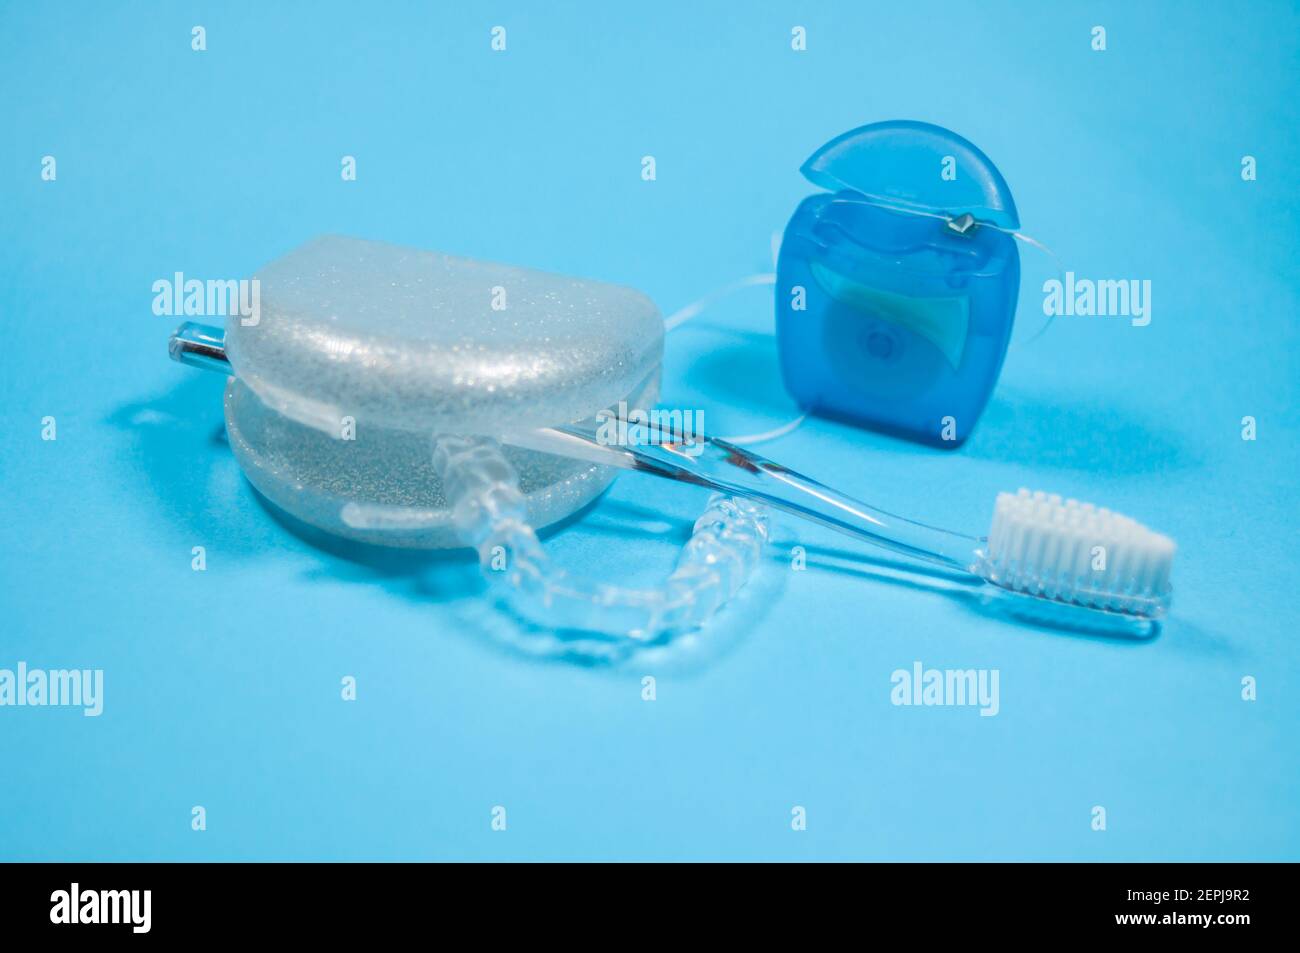 Eine Zahnschiene liegt in einer offenen Aufbewahrungsbox. Es gibt eine  Zahnbürste und eine Packung Zahnseide Stockfotografie - Alamy